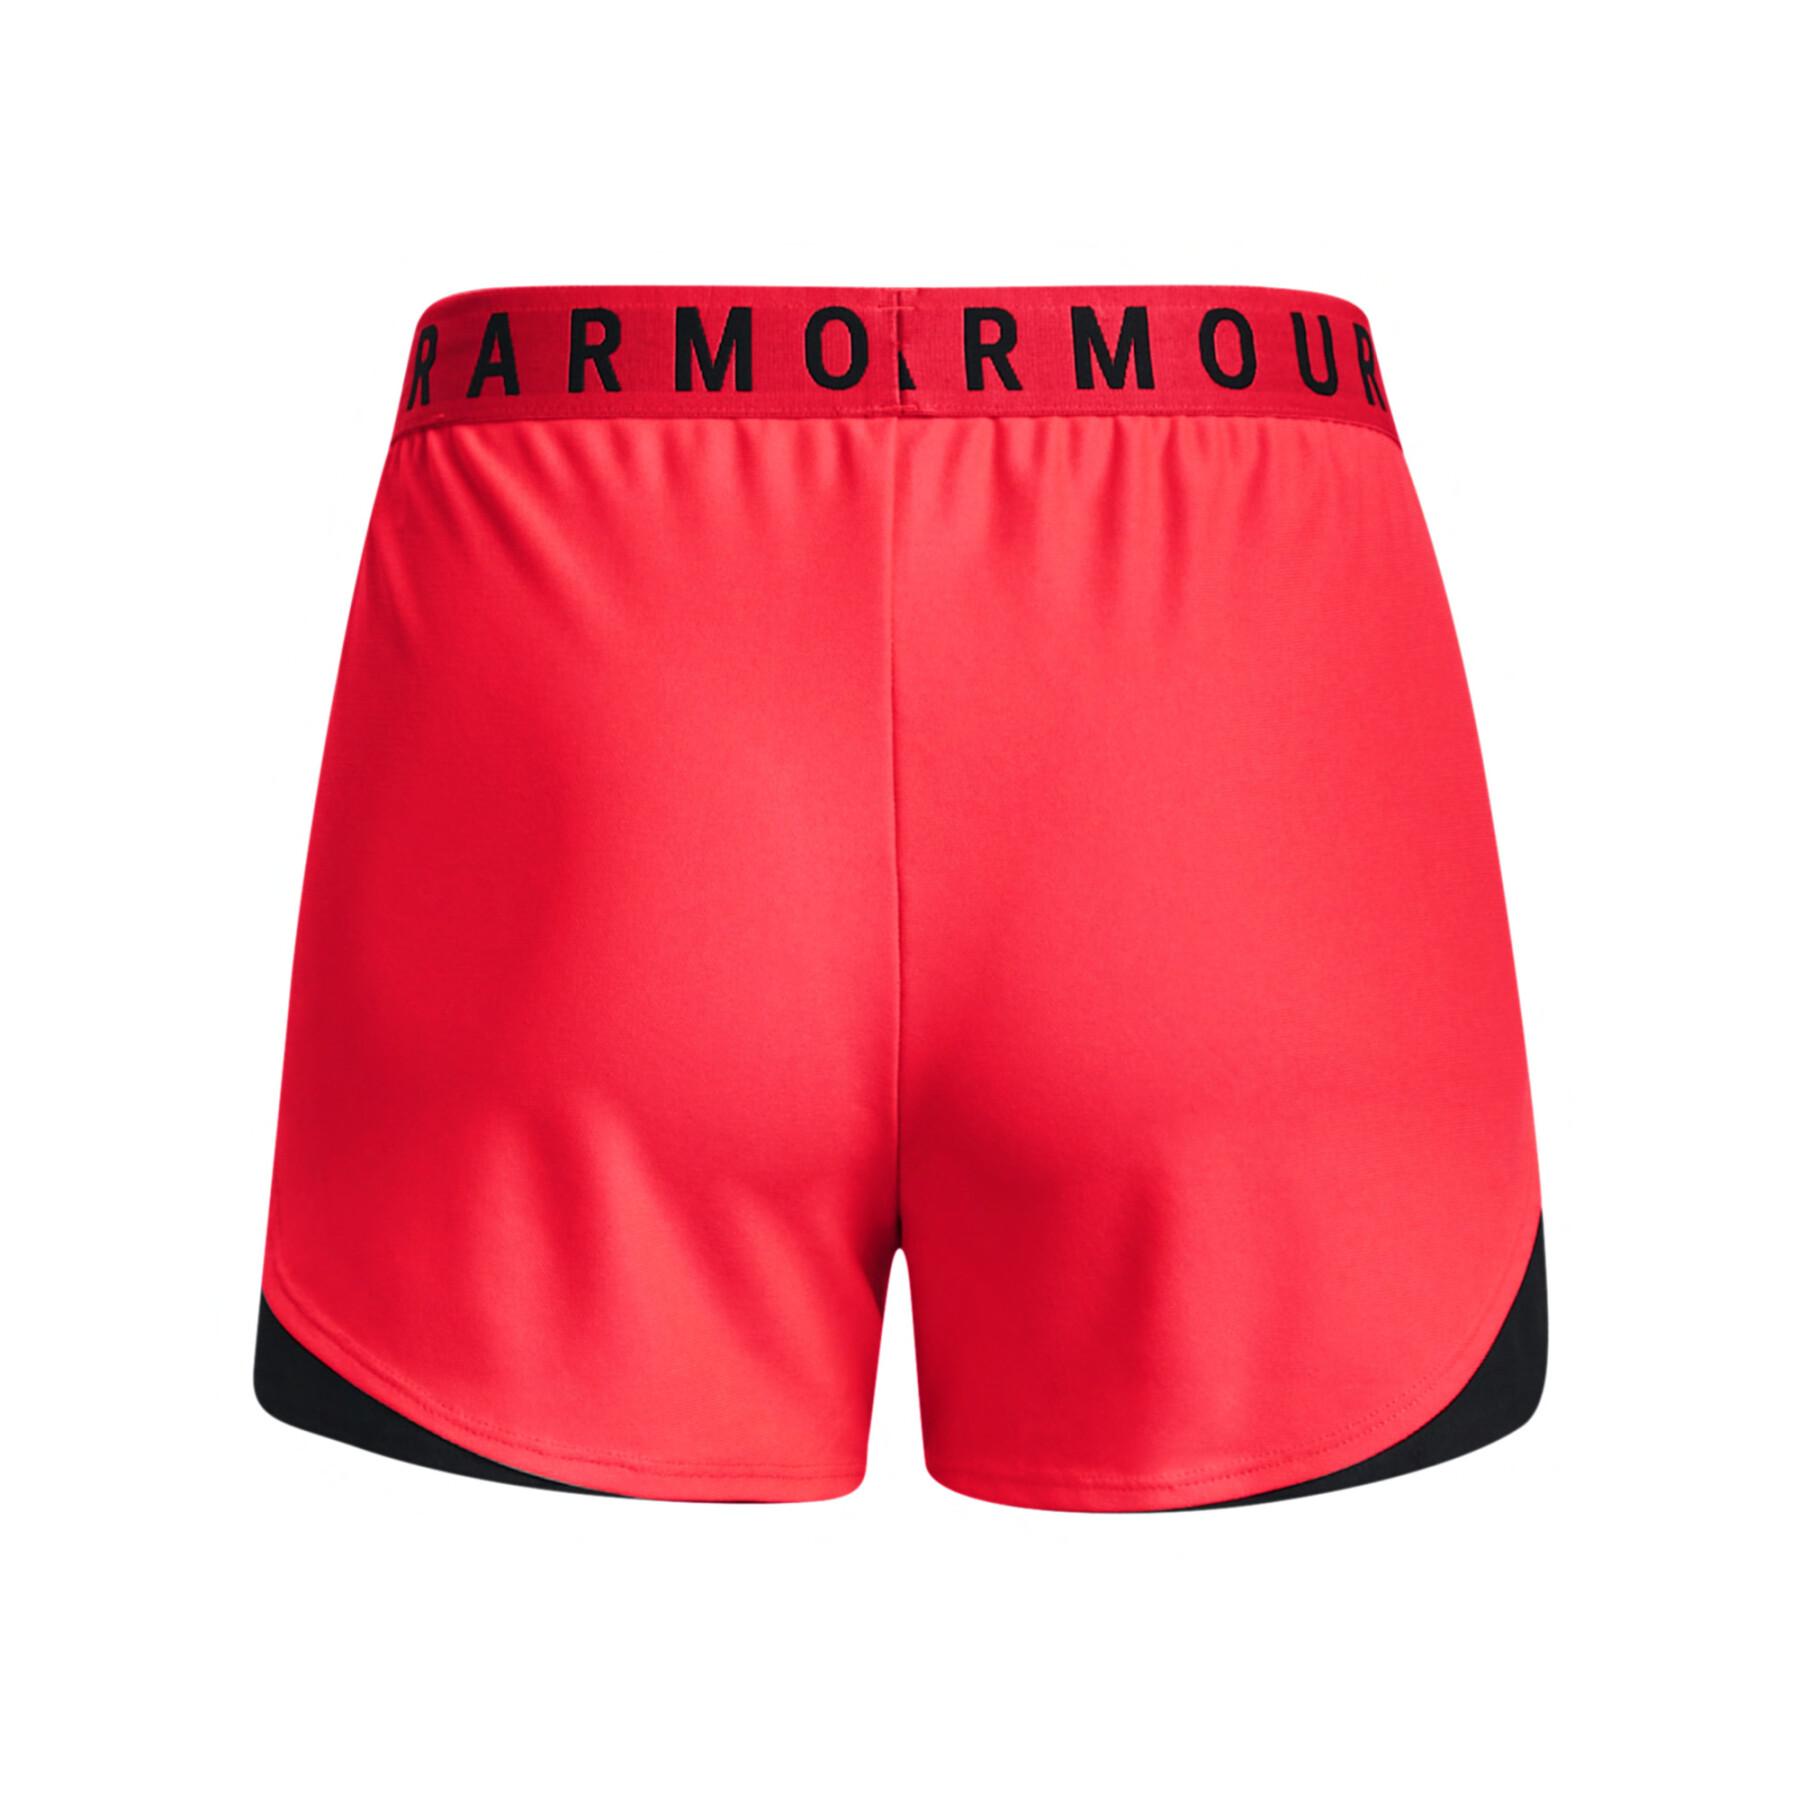 Shorts für Frauen Under Armour Play Up 3.0